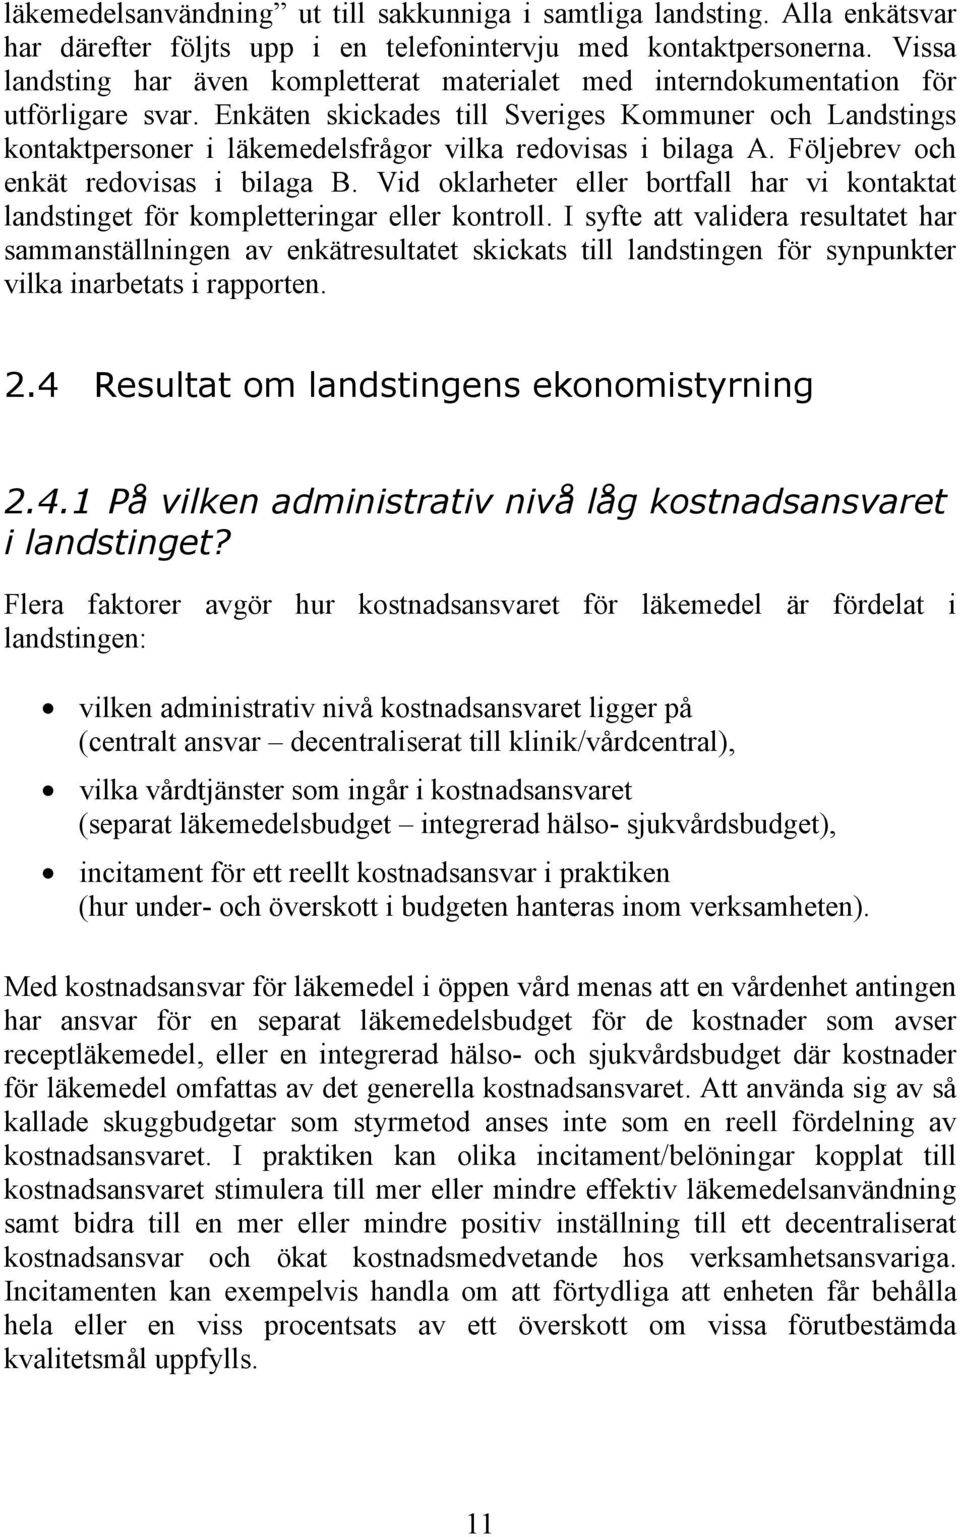 Enkäten skickades till Sveriges Kommuner och Landstings kontaktpersoner i läkemedelsfrågor vilka redovisas i bilaga A. Följebrev och enkät redovisas i bilaga B.